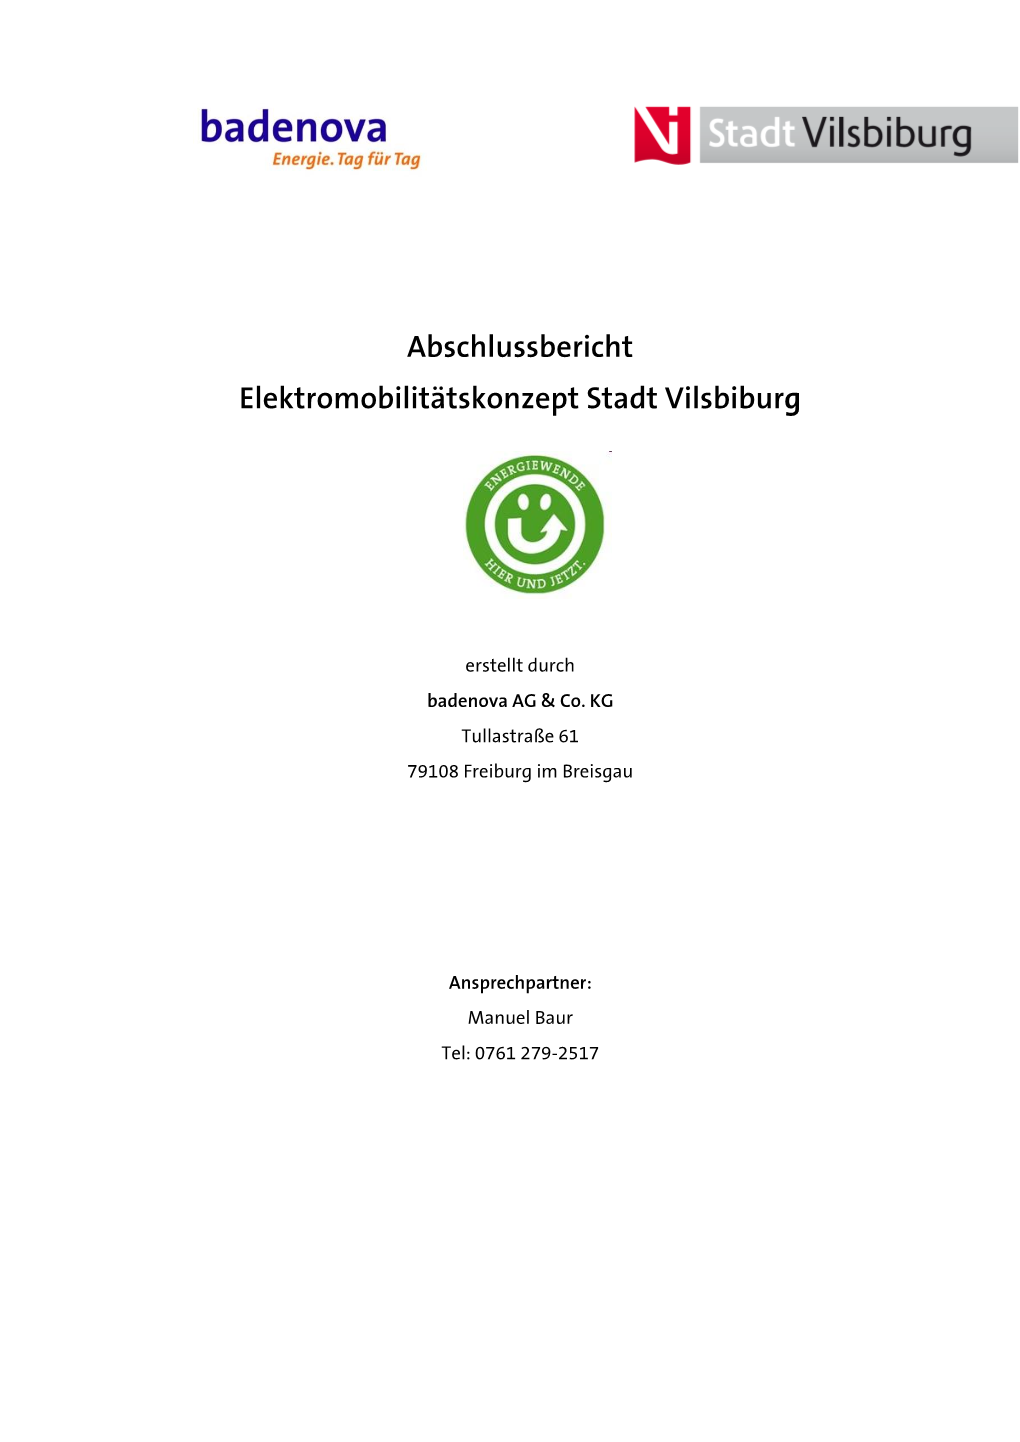 Abschlussbericht Elektromobilitätskonzept Stadt Vilsbiburg